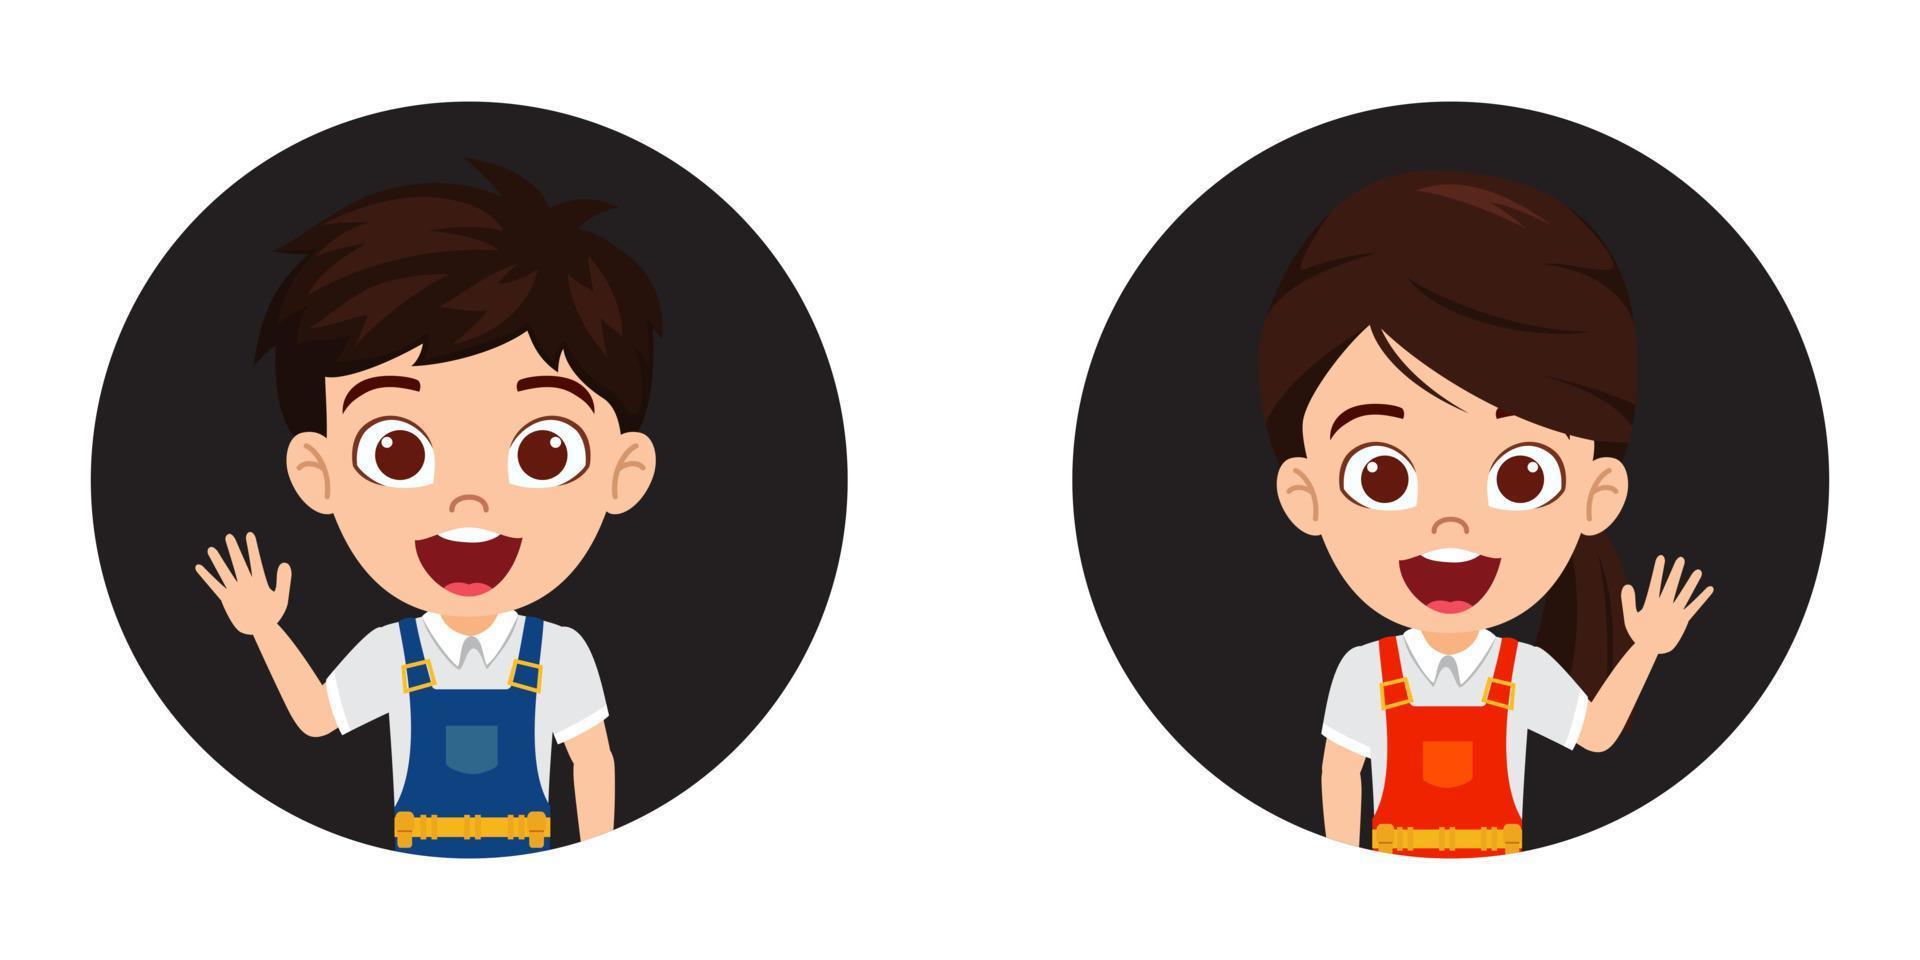 glad söt vacker unge pojke och flicka ingenjör byggnadsarbetare karaktär avatar står och poserar vektor